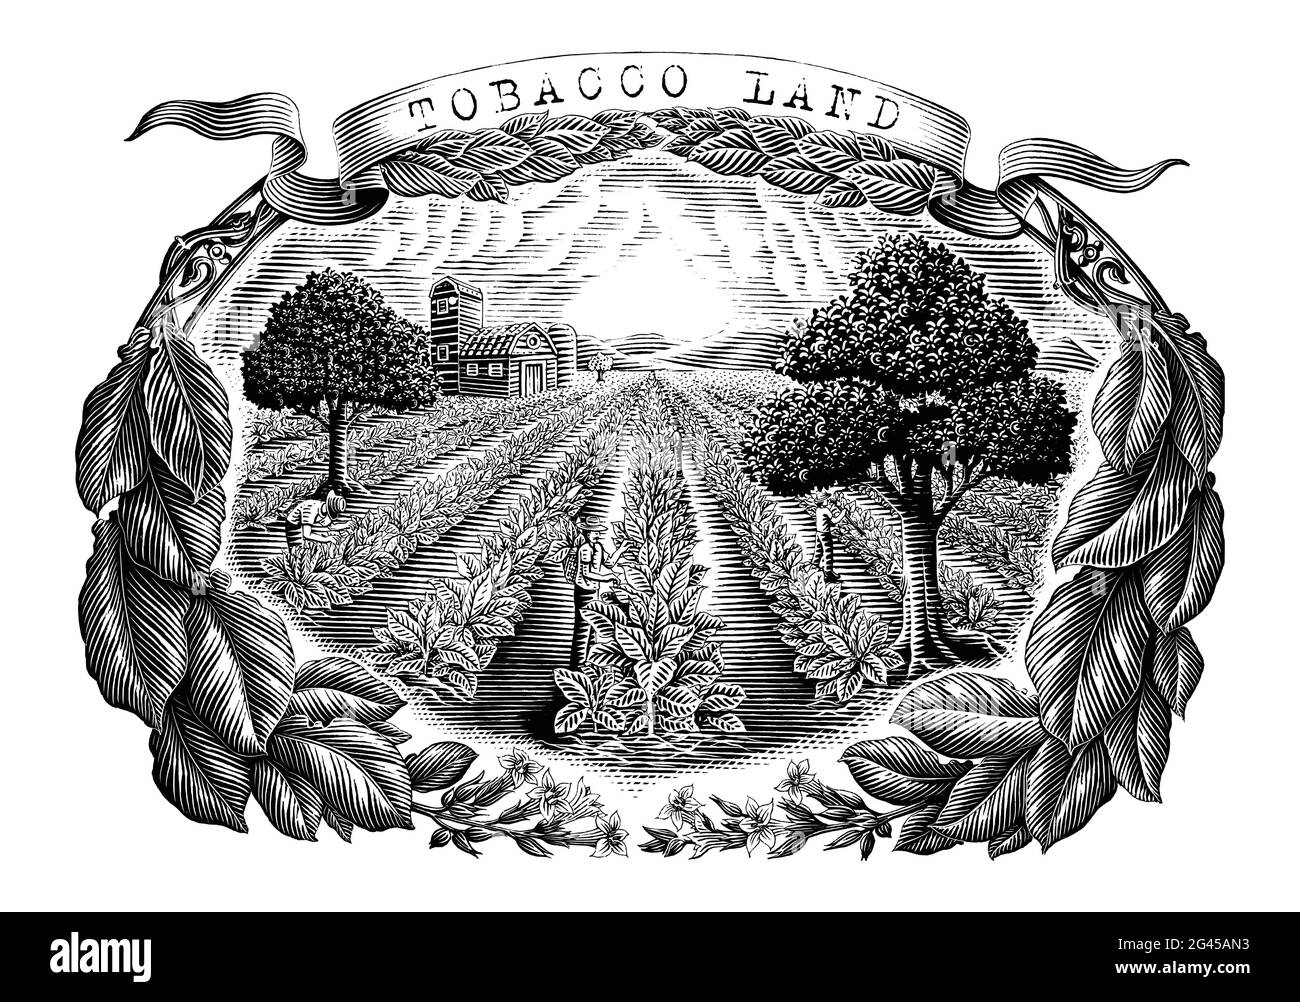 Tabac terre main dessin vintage style gravure noir et blanc clip art isolé sur fond blanc Illustration de Vecteur